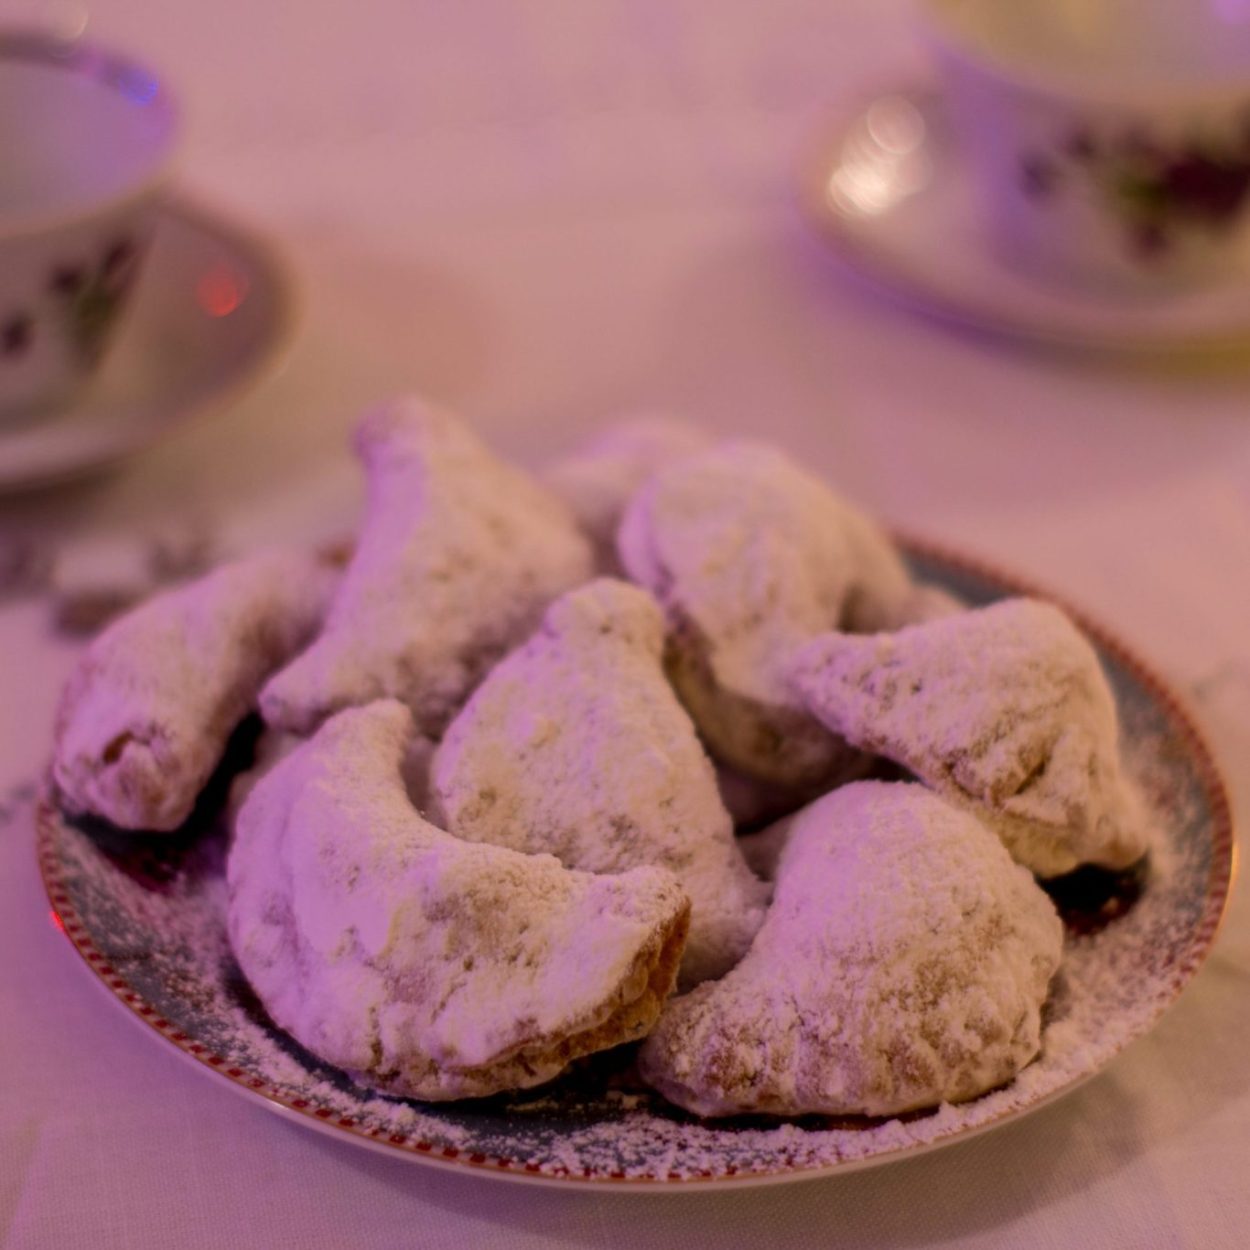 Qotab – Petits croissants à la cardamome farcis aux amandes et aux noix – Recette iranienne